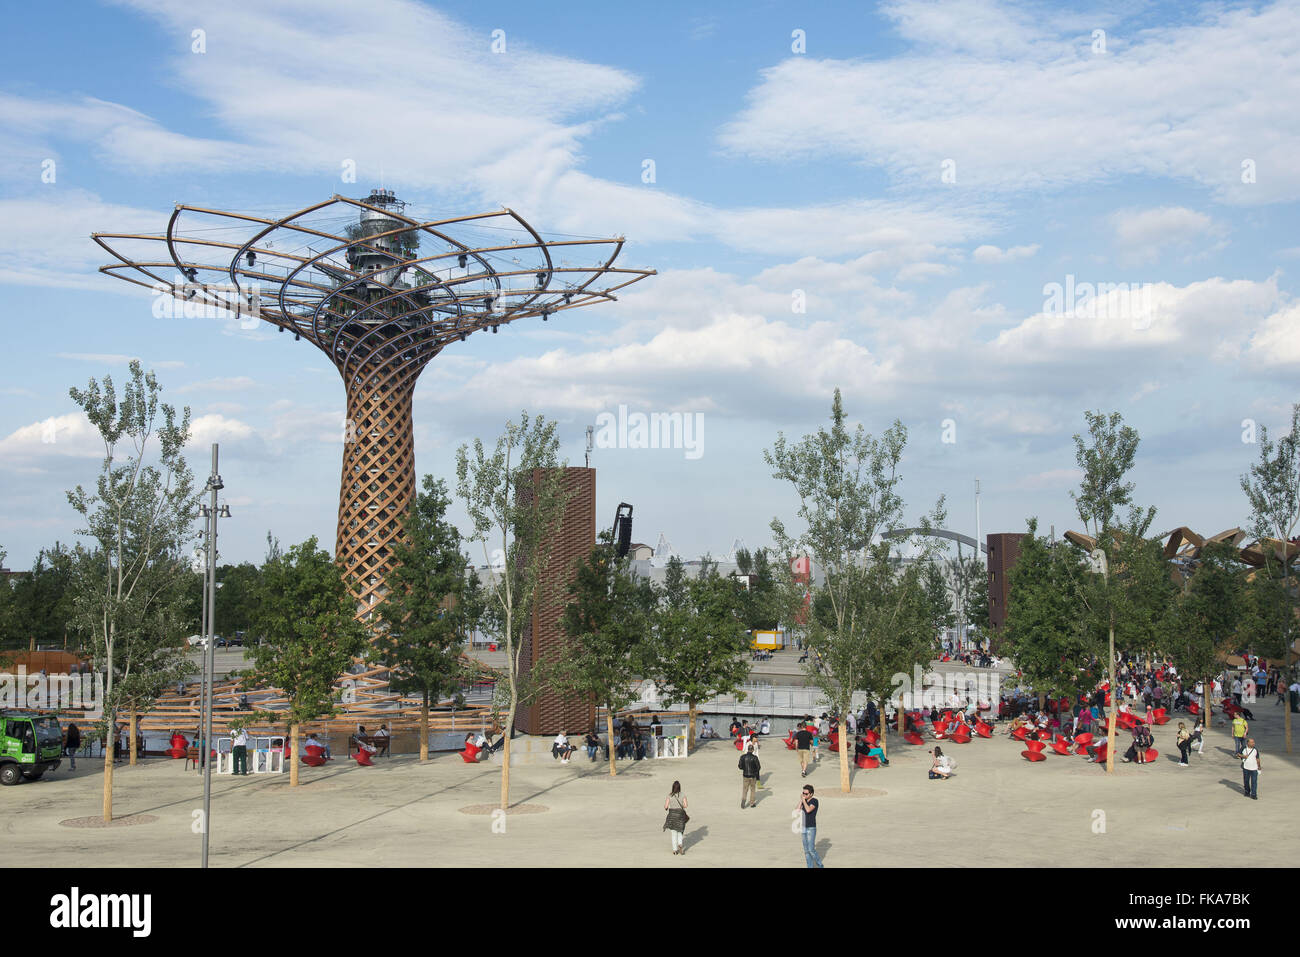 Árvore da Vida na Expo Milano 2015 - monumento símbolo da Exposição Universal Stock Photo